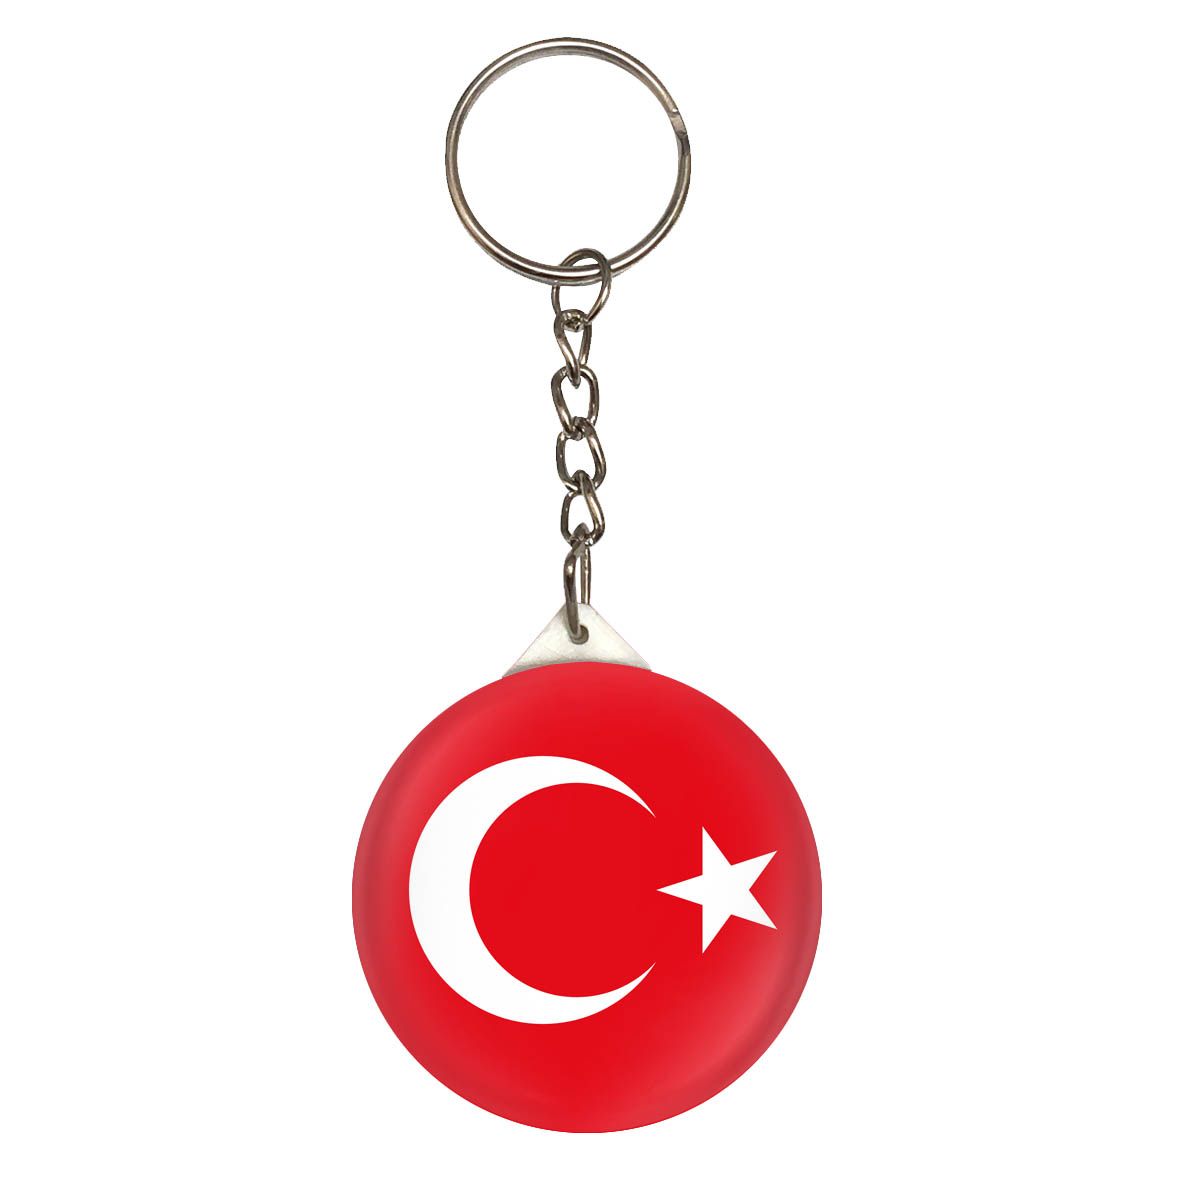 جاکلیدی طرح پرچم ترکیه کد jk198 -  - 1